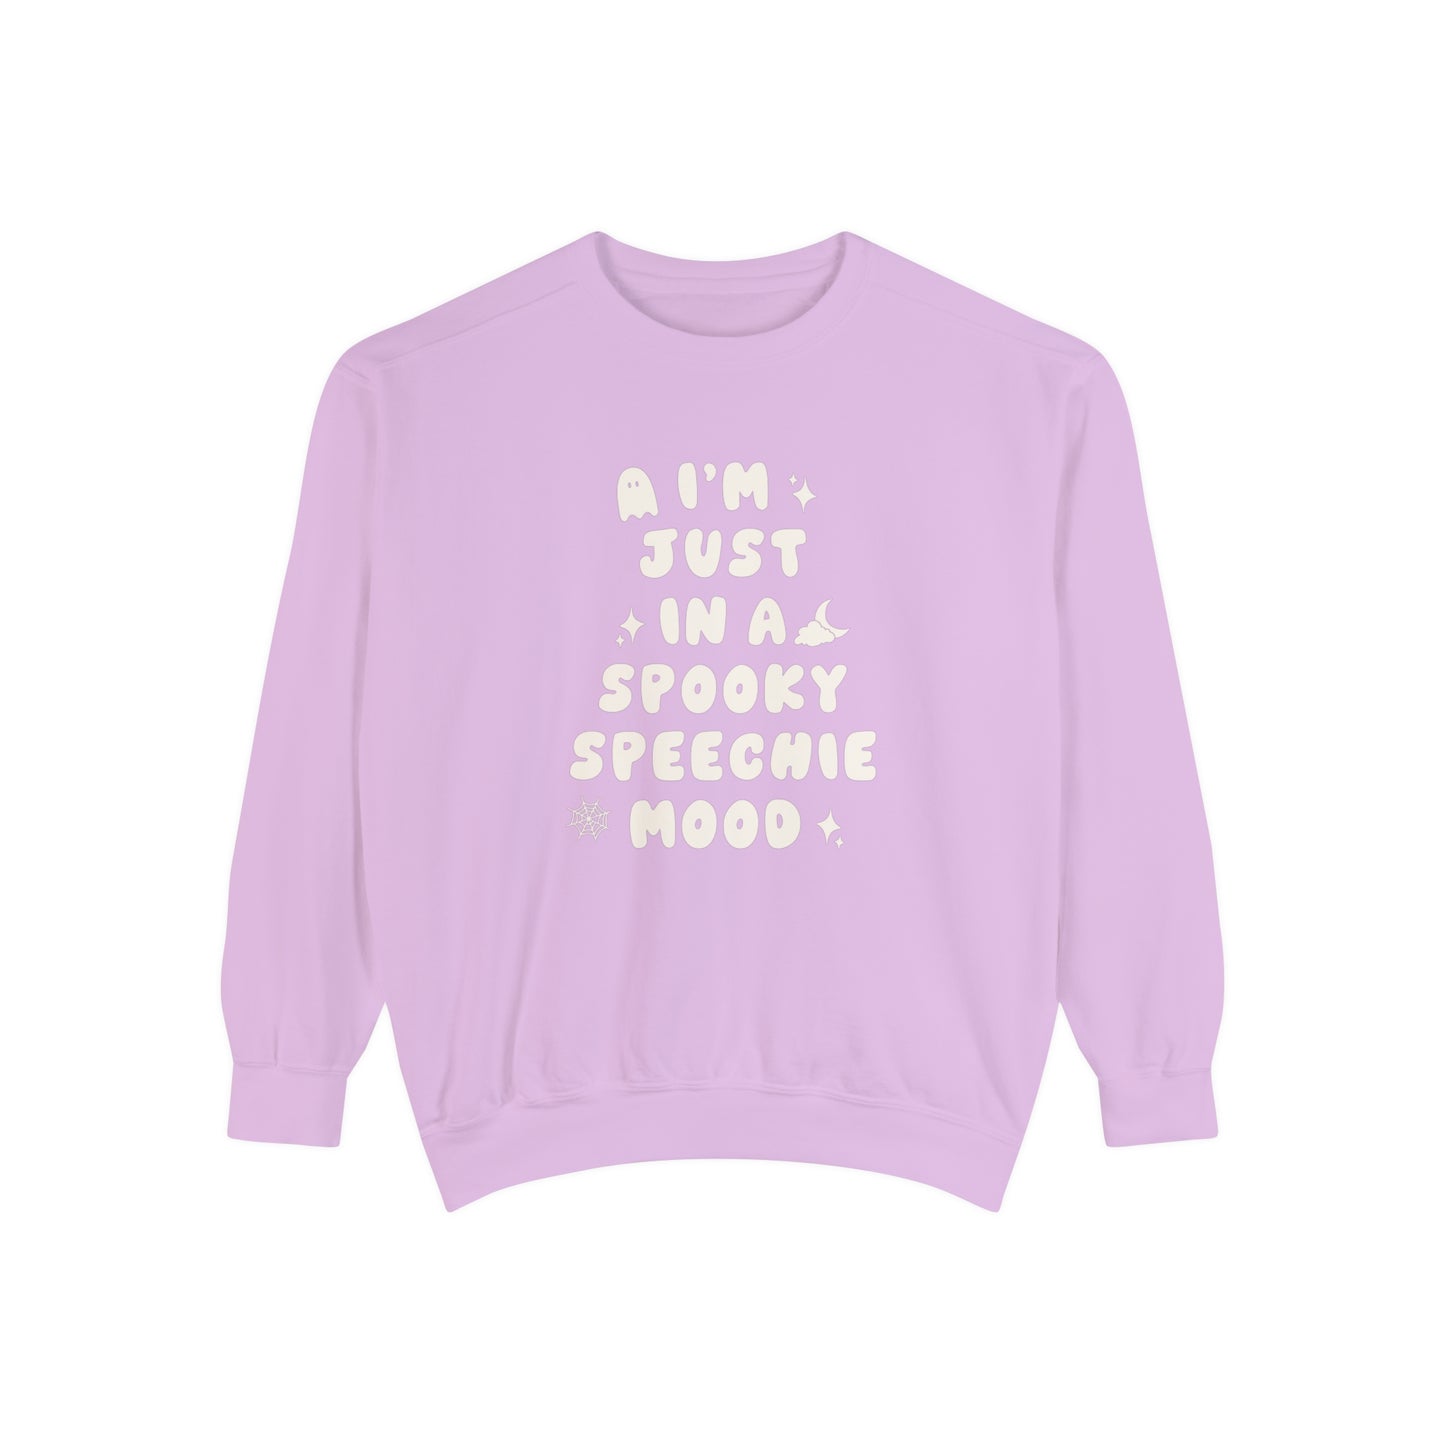 Spooky Speechie Mood Comfort Colors Sweatshirt